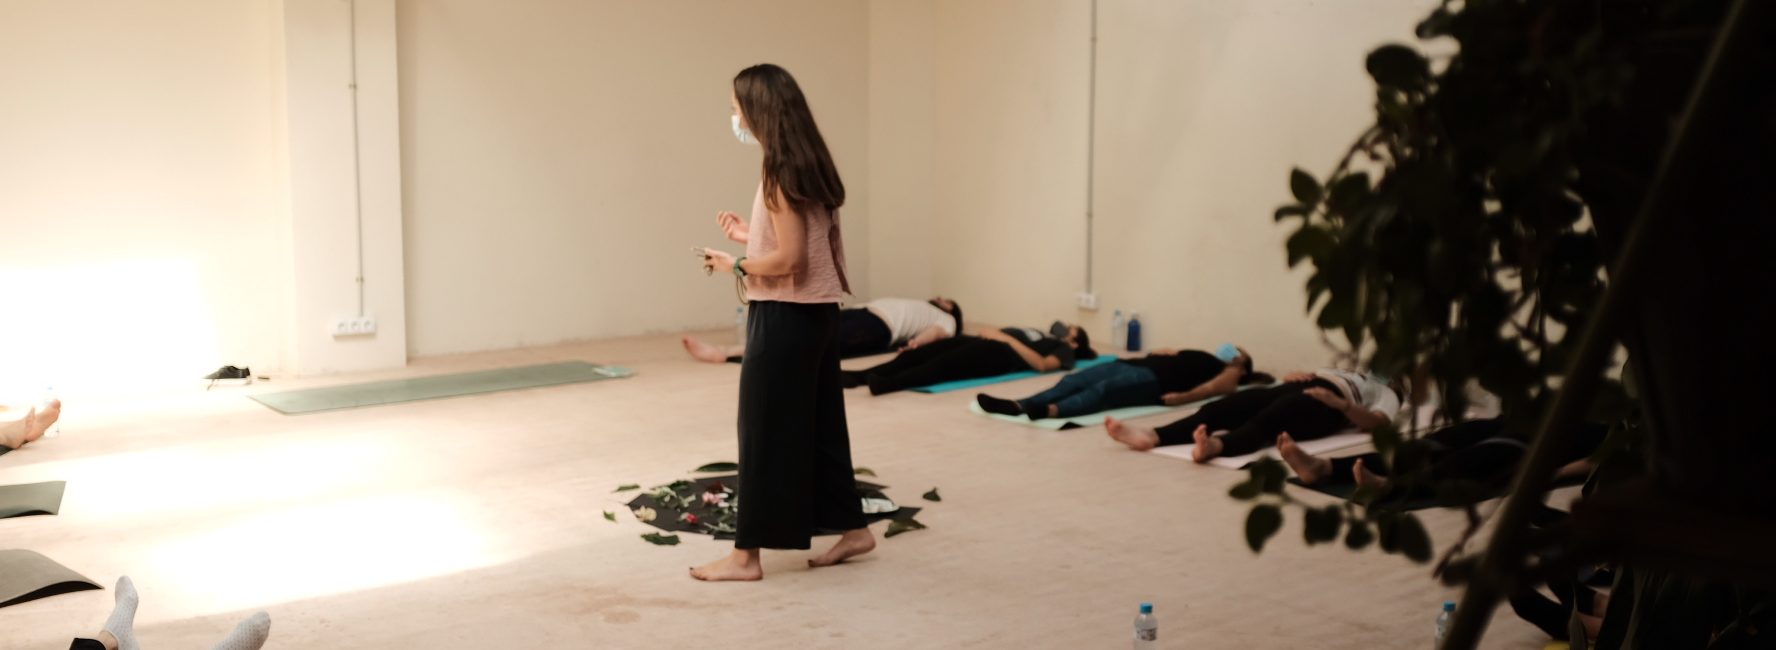 La importancia de practicar yoga